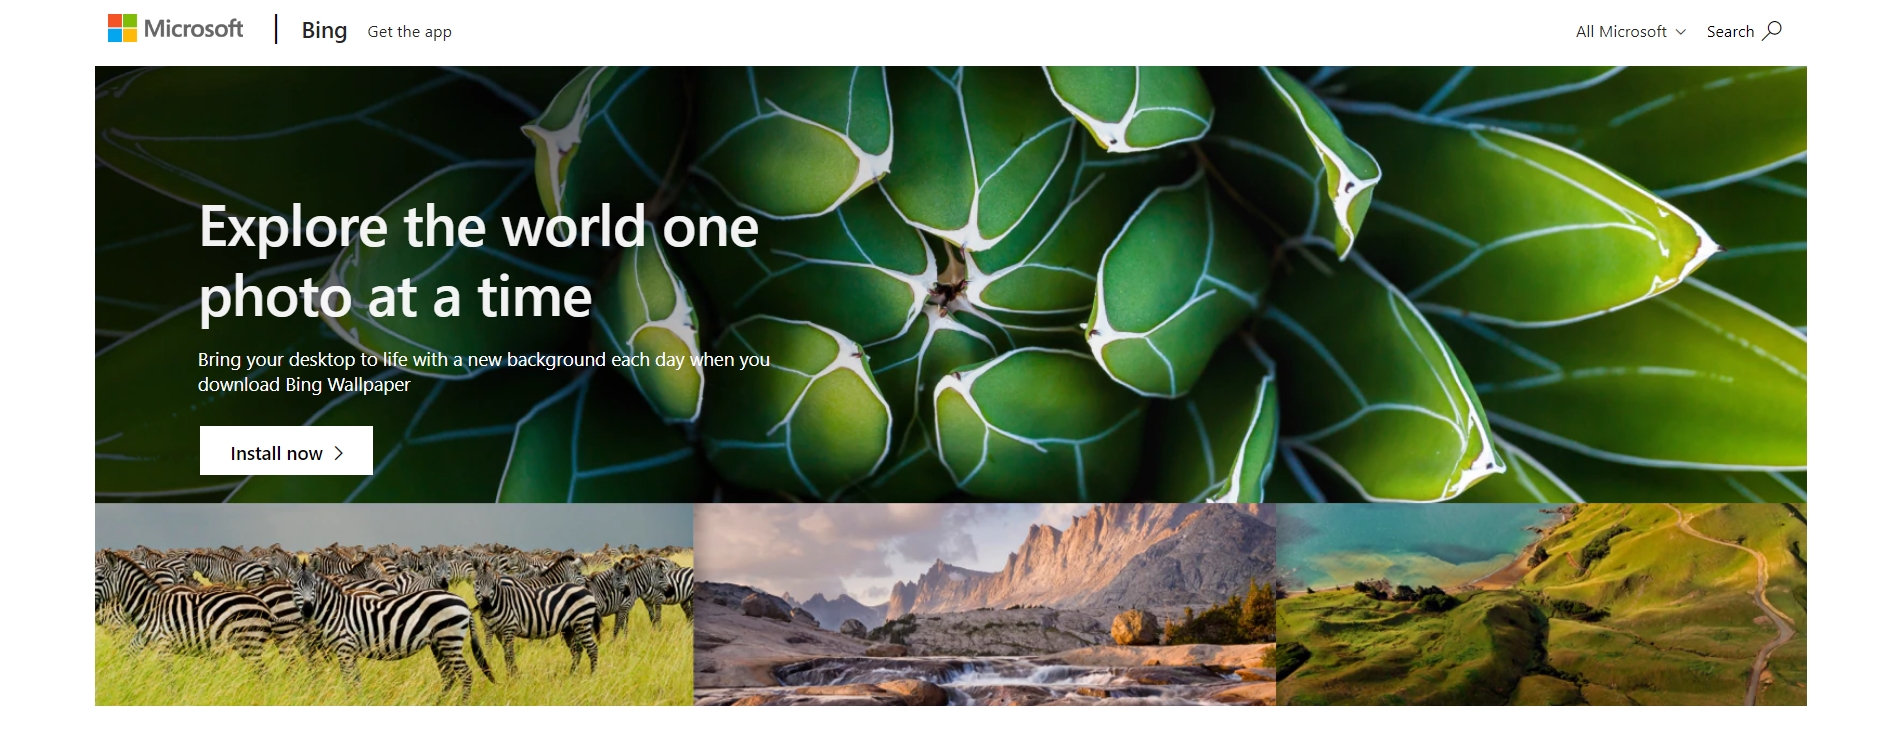 Microsoft phát hành ứng dụng chuyển đổi ảnh nền Bing Wallpaper